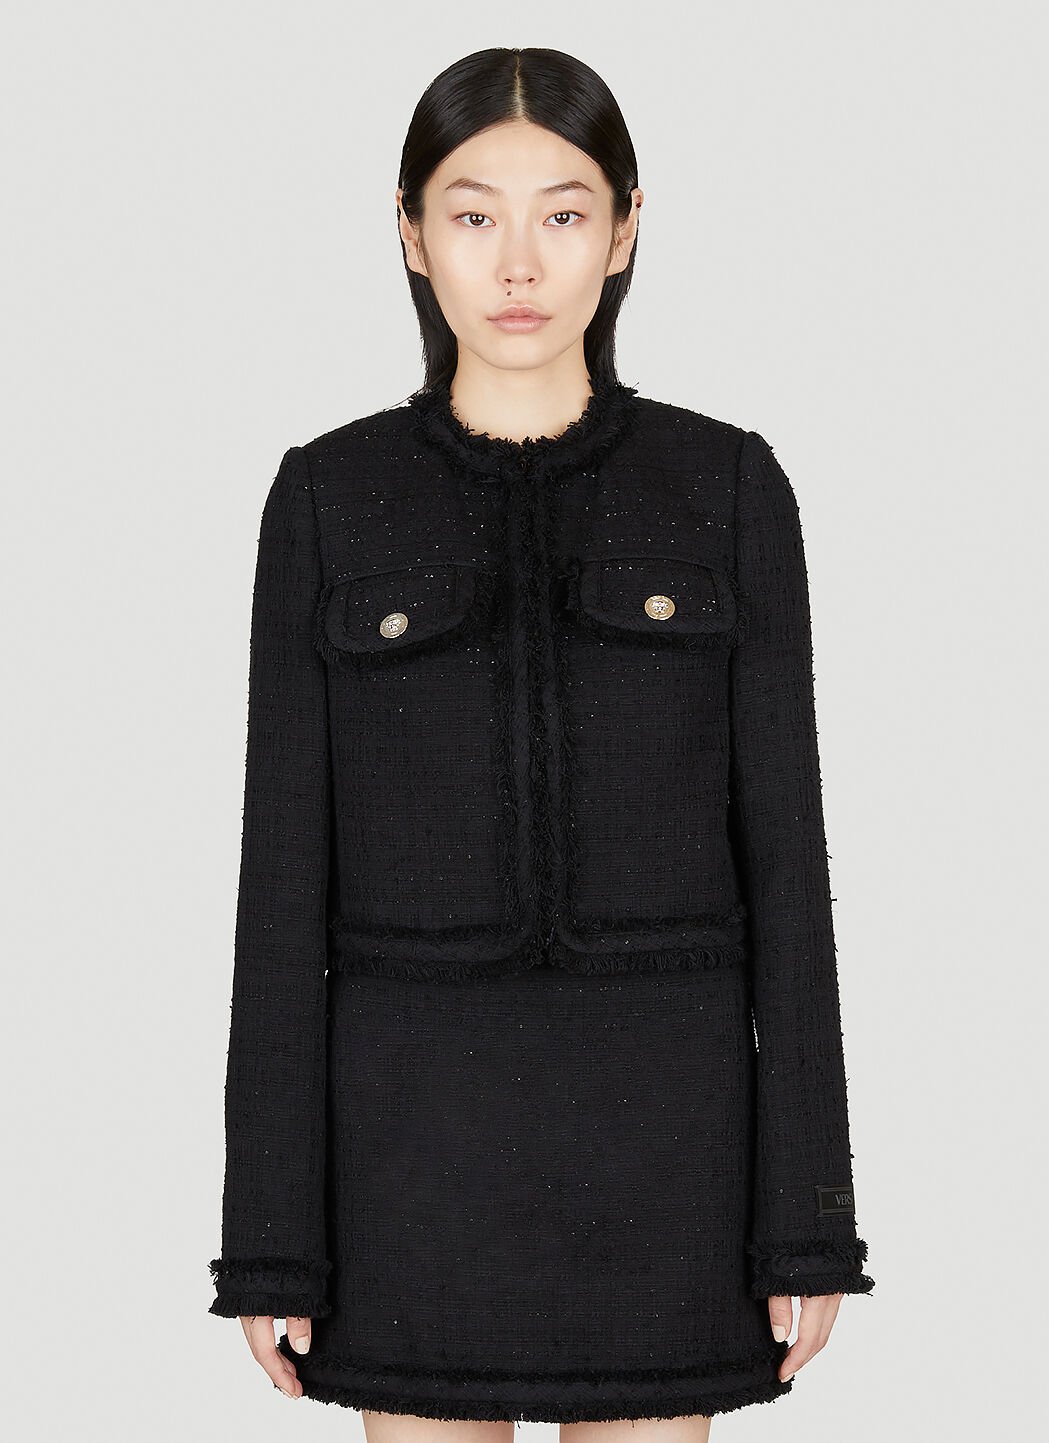 Versace Tweed Cardigan Jacket Black ver0255031